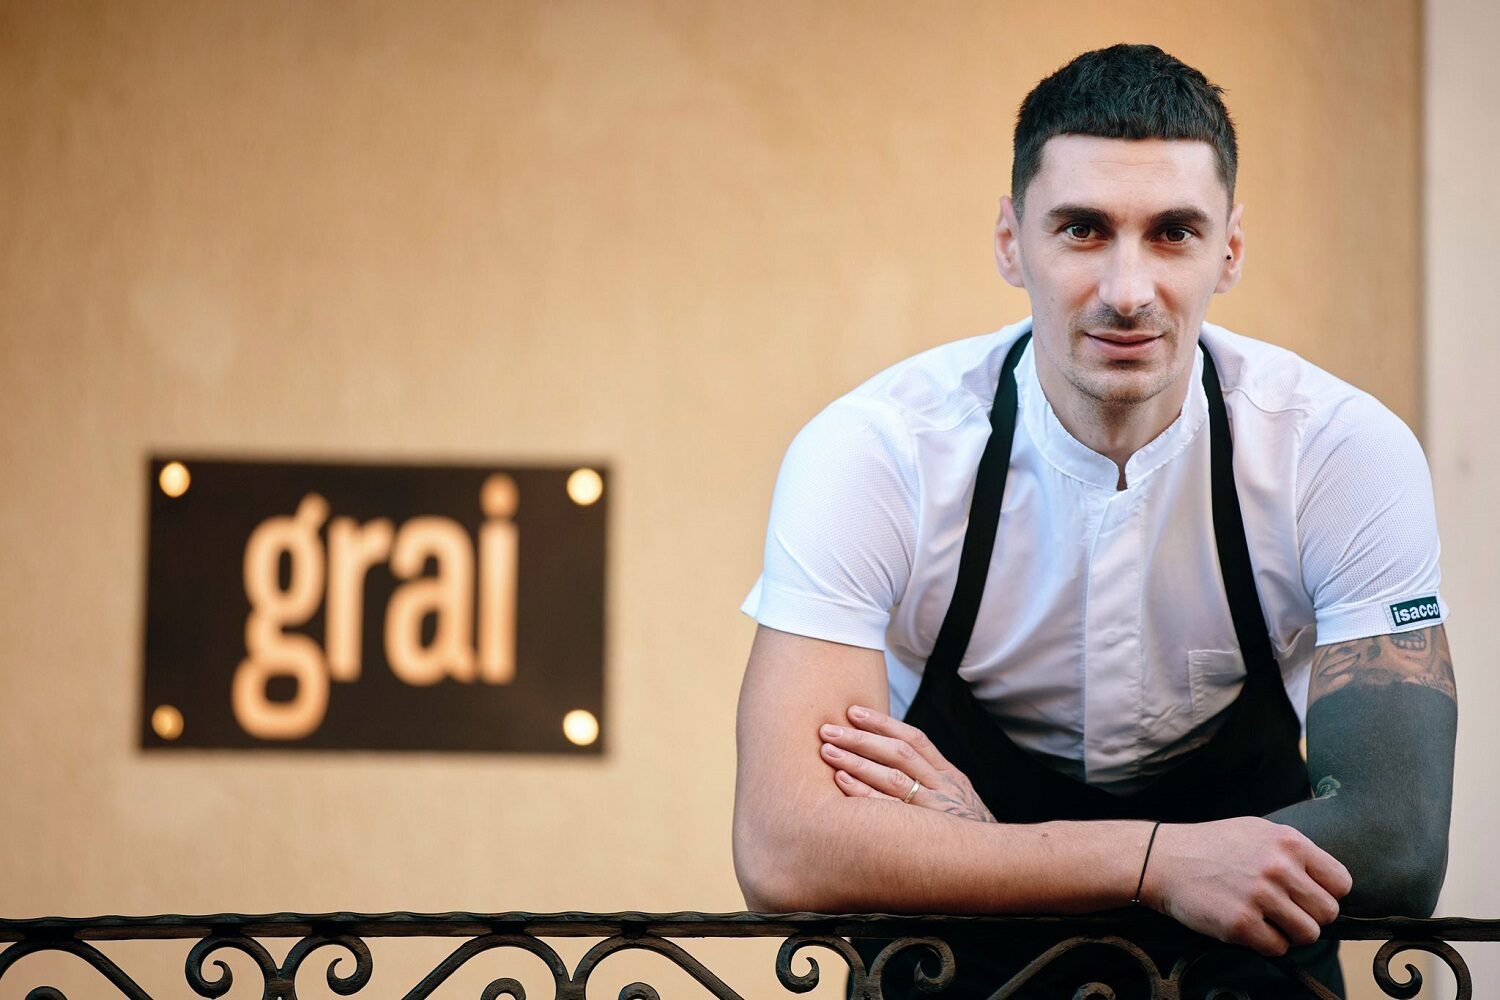 Chef Daniel Pălici fotografiat in dreptul intrarii de la restaurant Grai